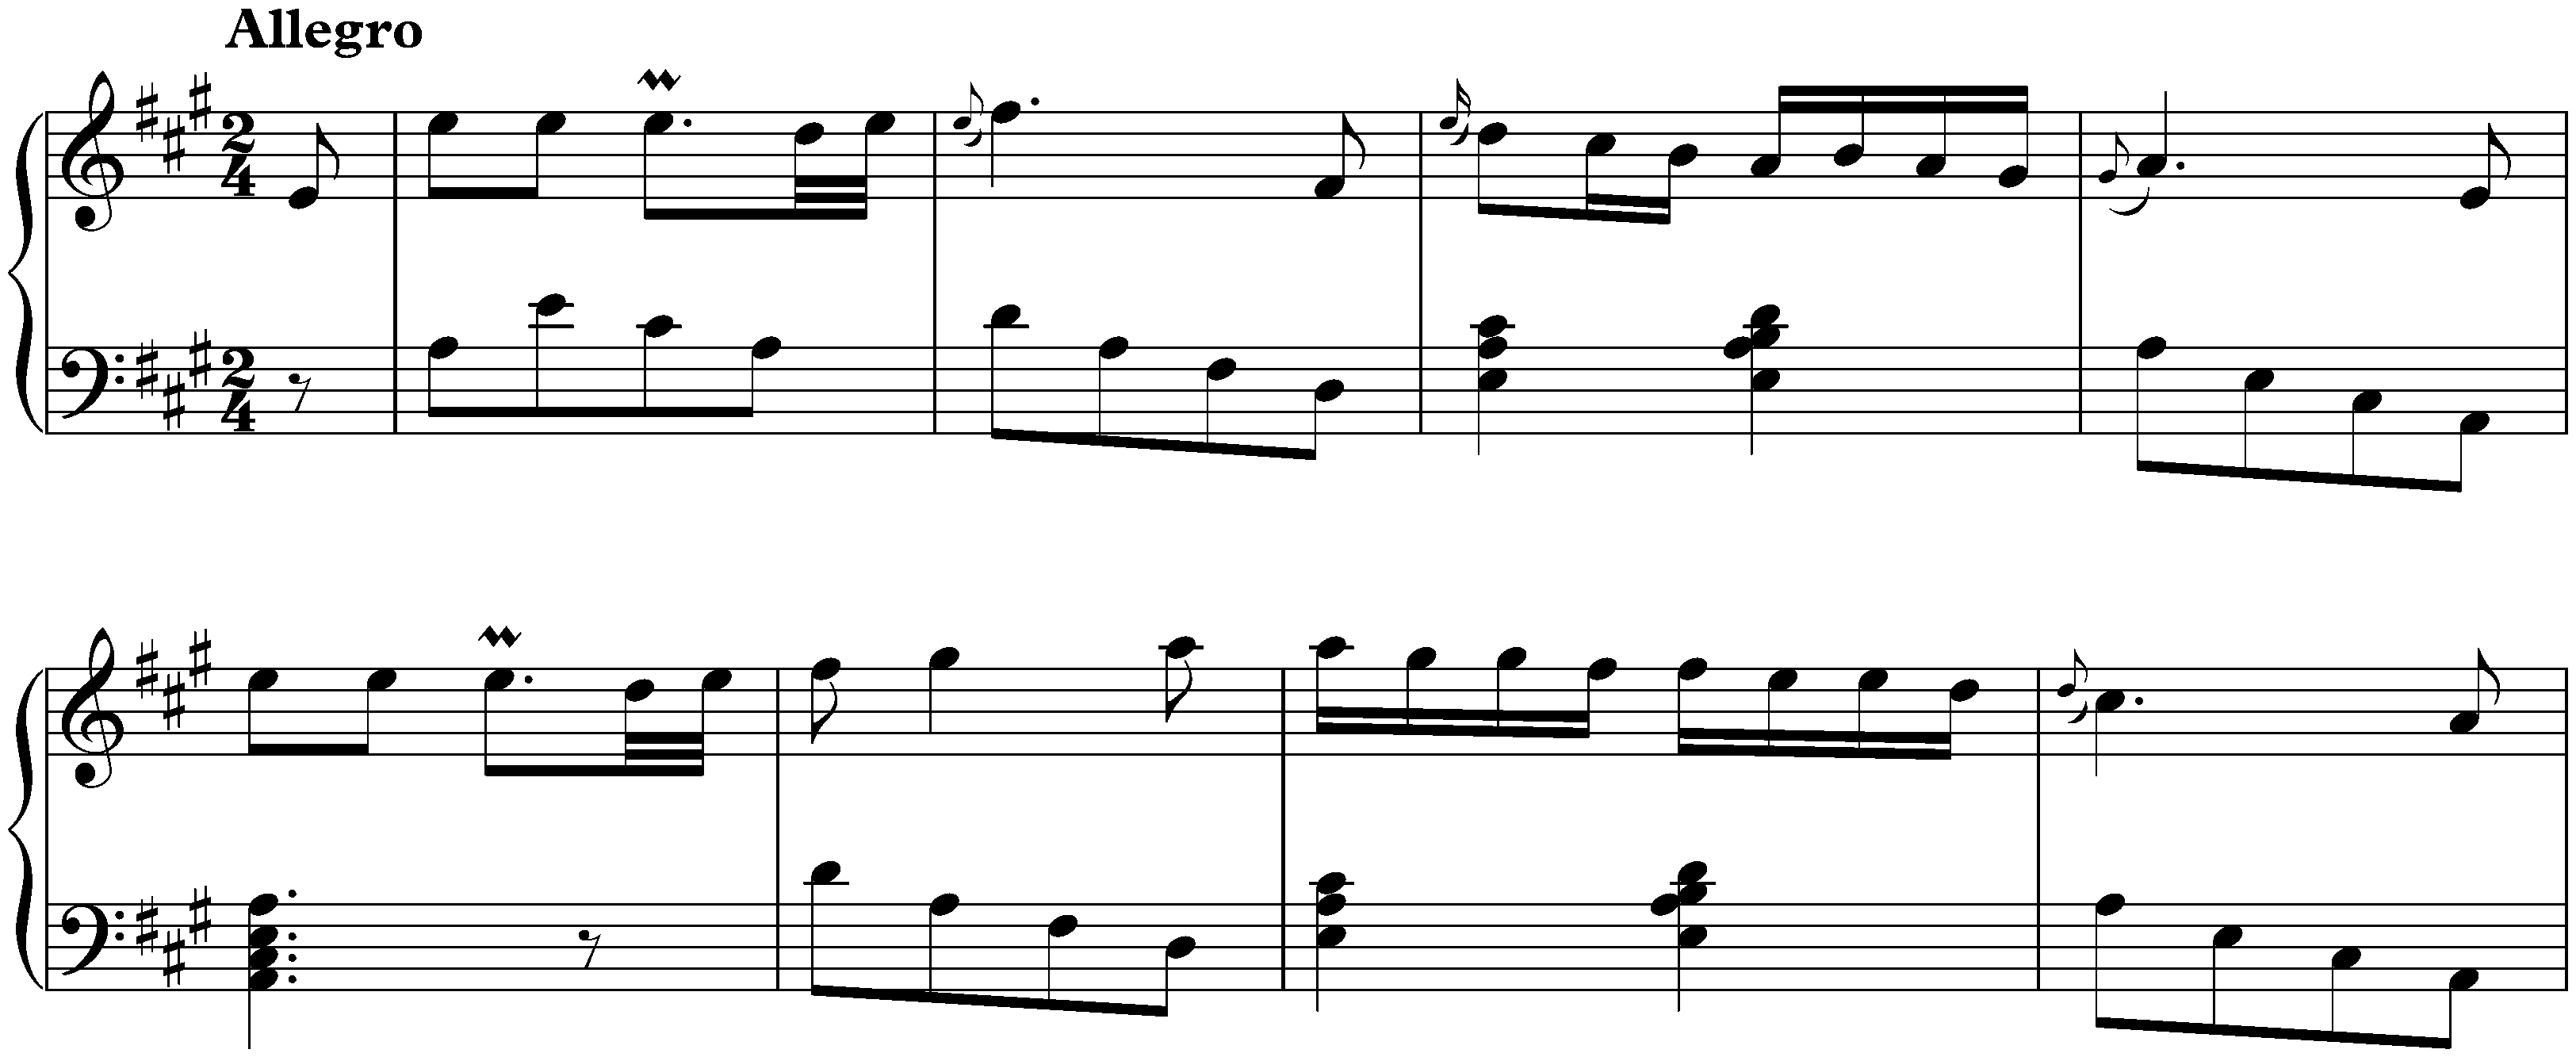 Sonata in A major, K. 181